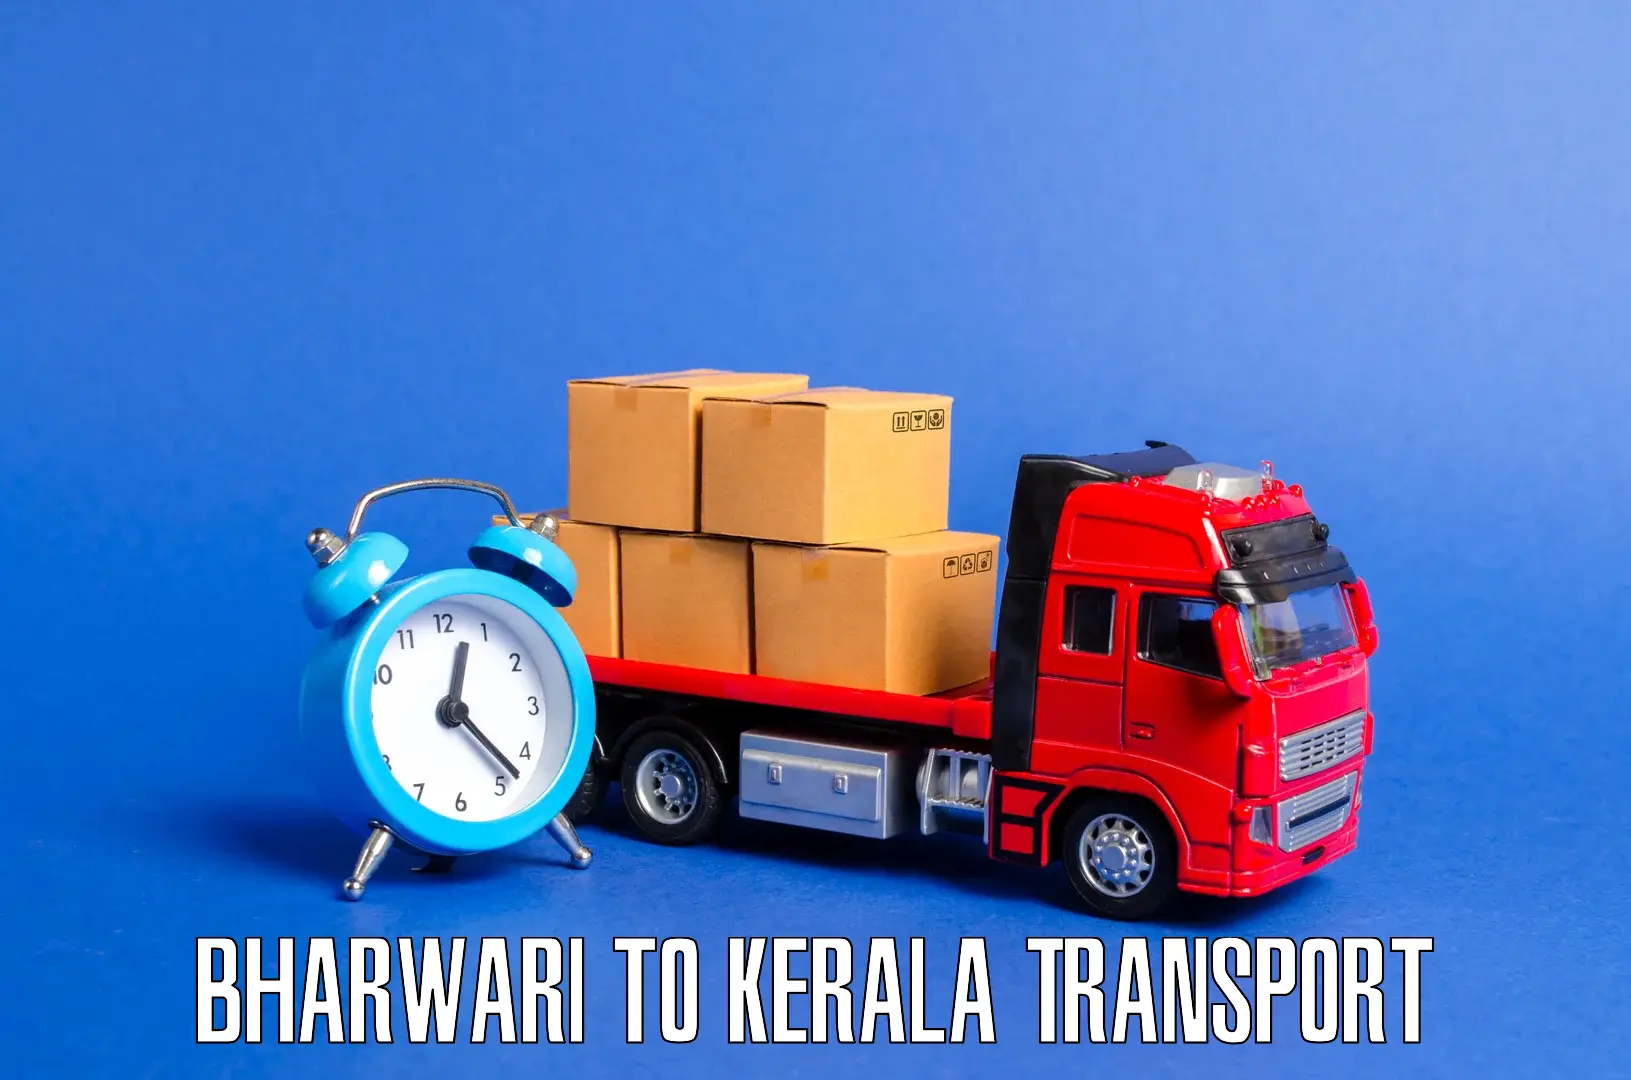 Delivery service Bharwari to Cherpulassery